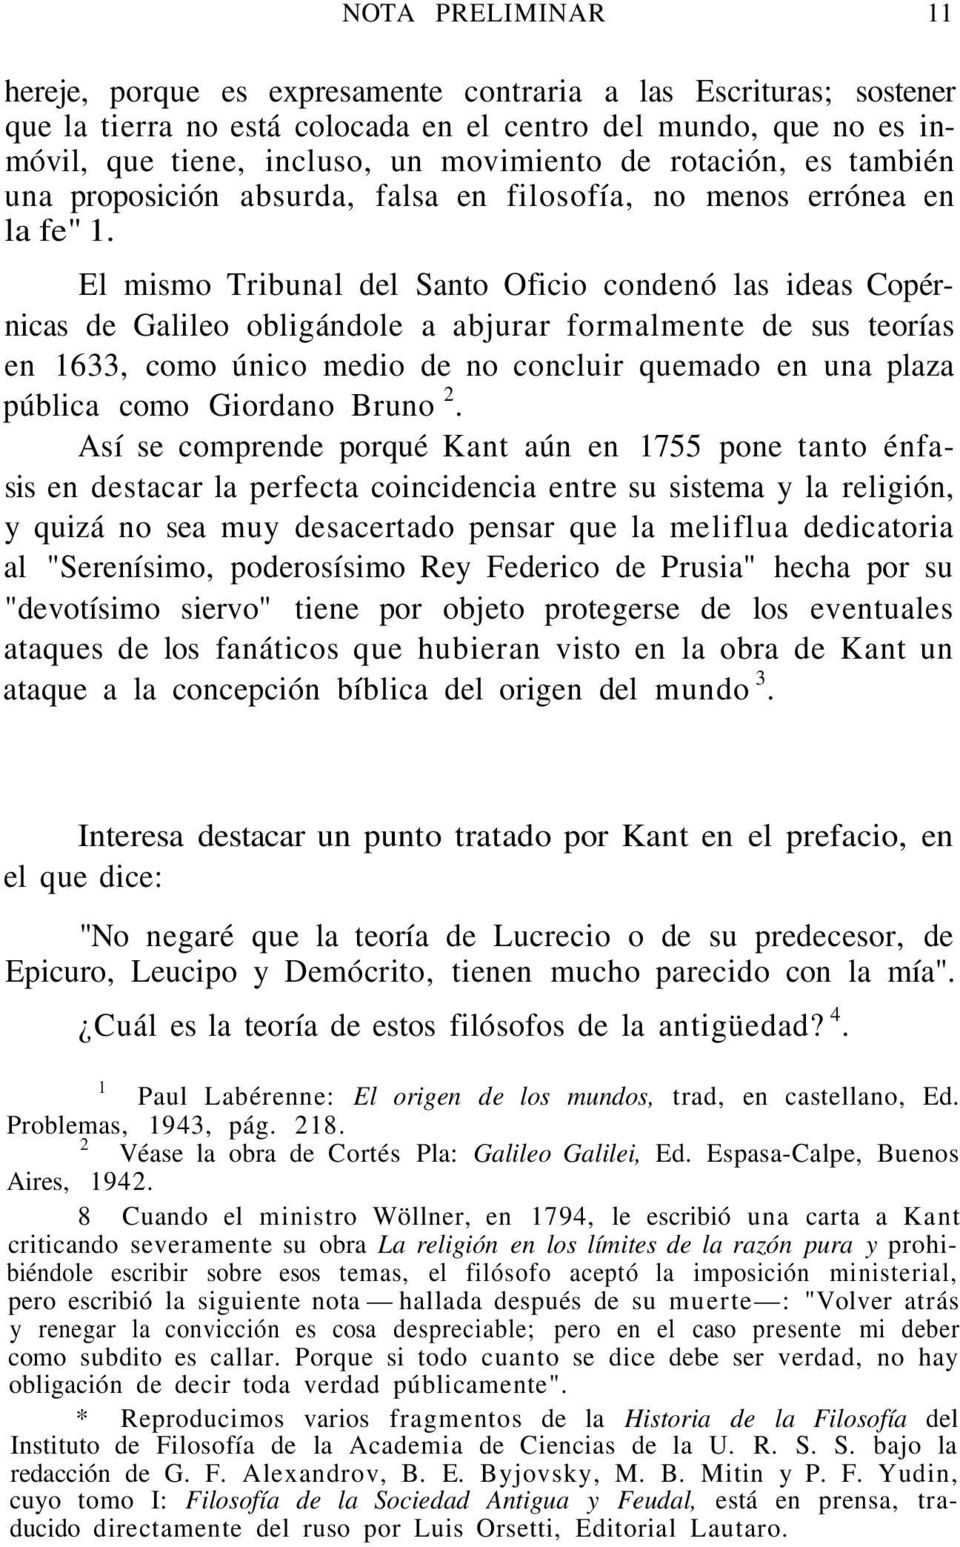 El mismo Tribunal del Santo Oficio condenó las ideas Copérnicas de Galileo obligándole a abjurar formalmente de sus teorías en 1633, como único medio de no concluir quemado en una plaza pública como